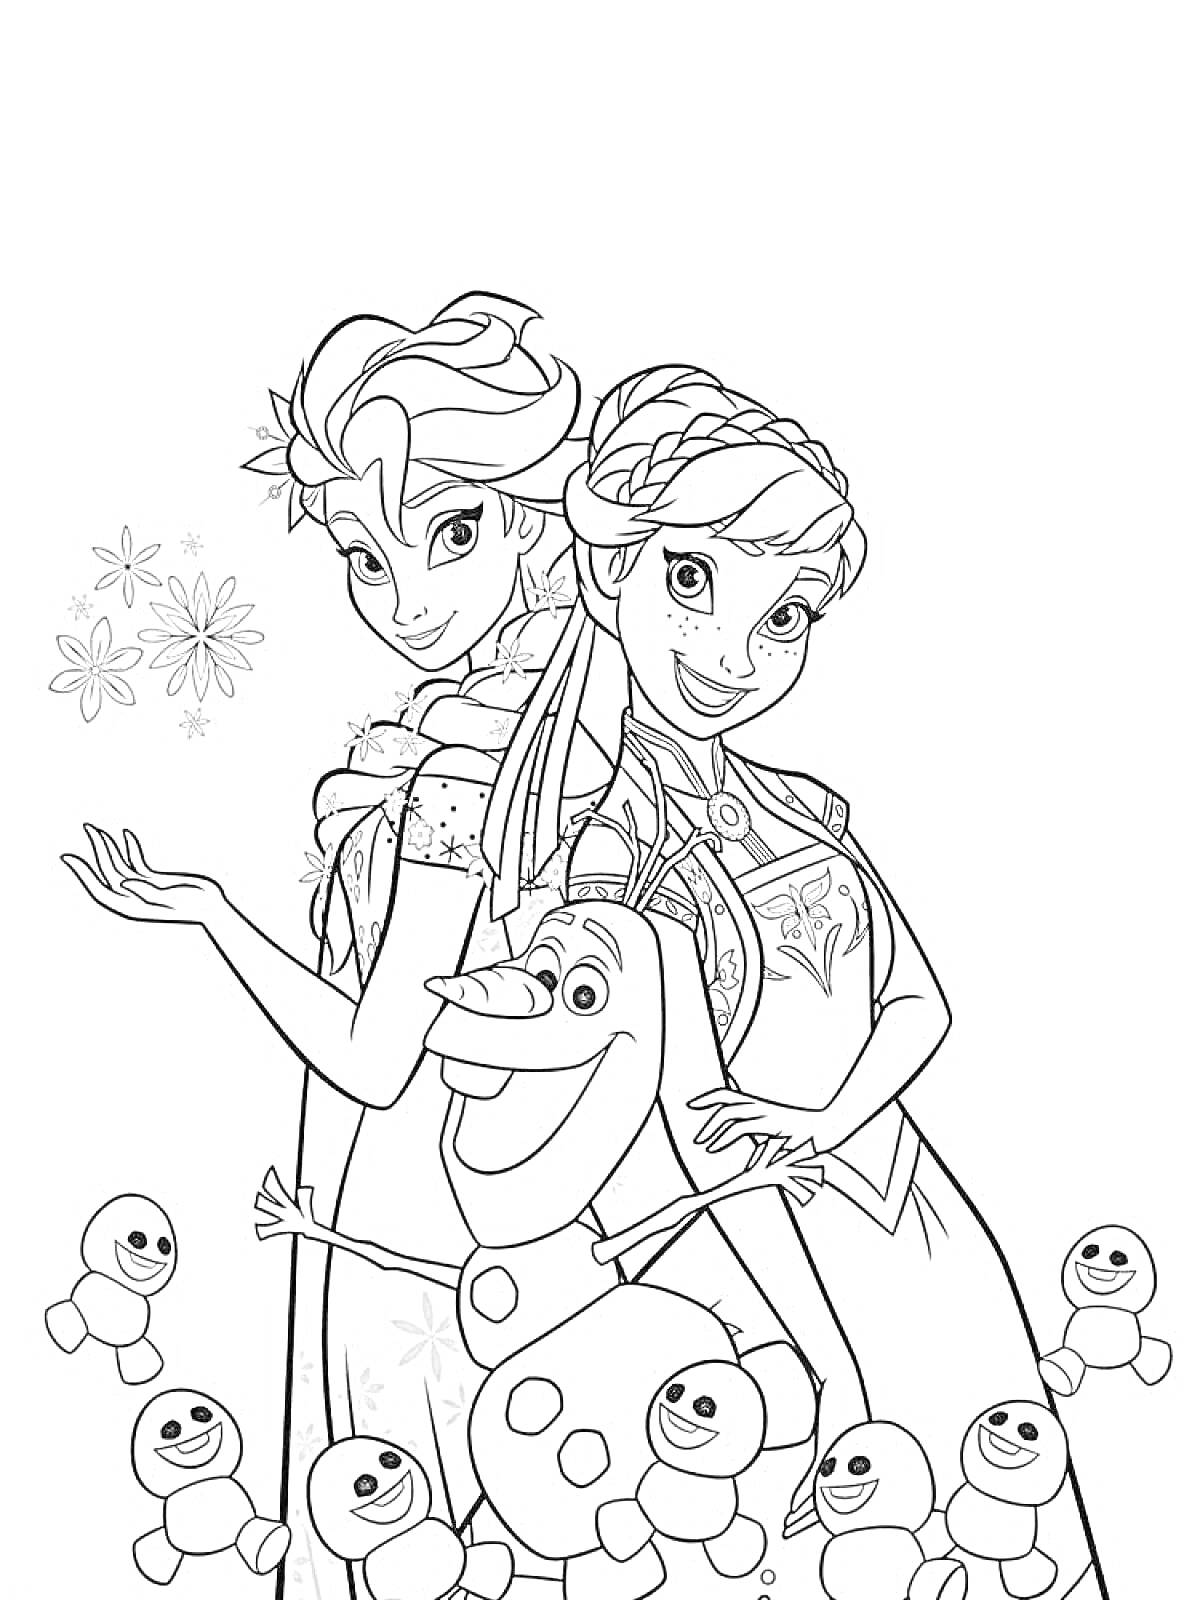 Раскраска Женские персонажи Холодного сердца с улыбающимся снеговиком и маленькими снежными человечками